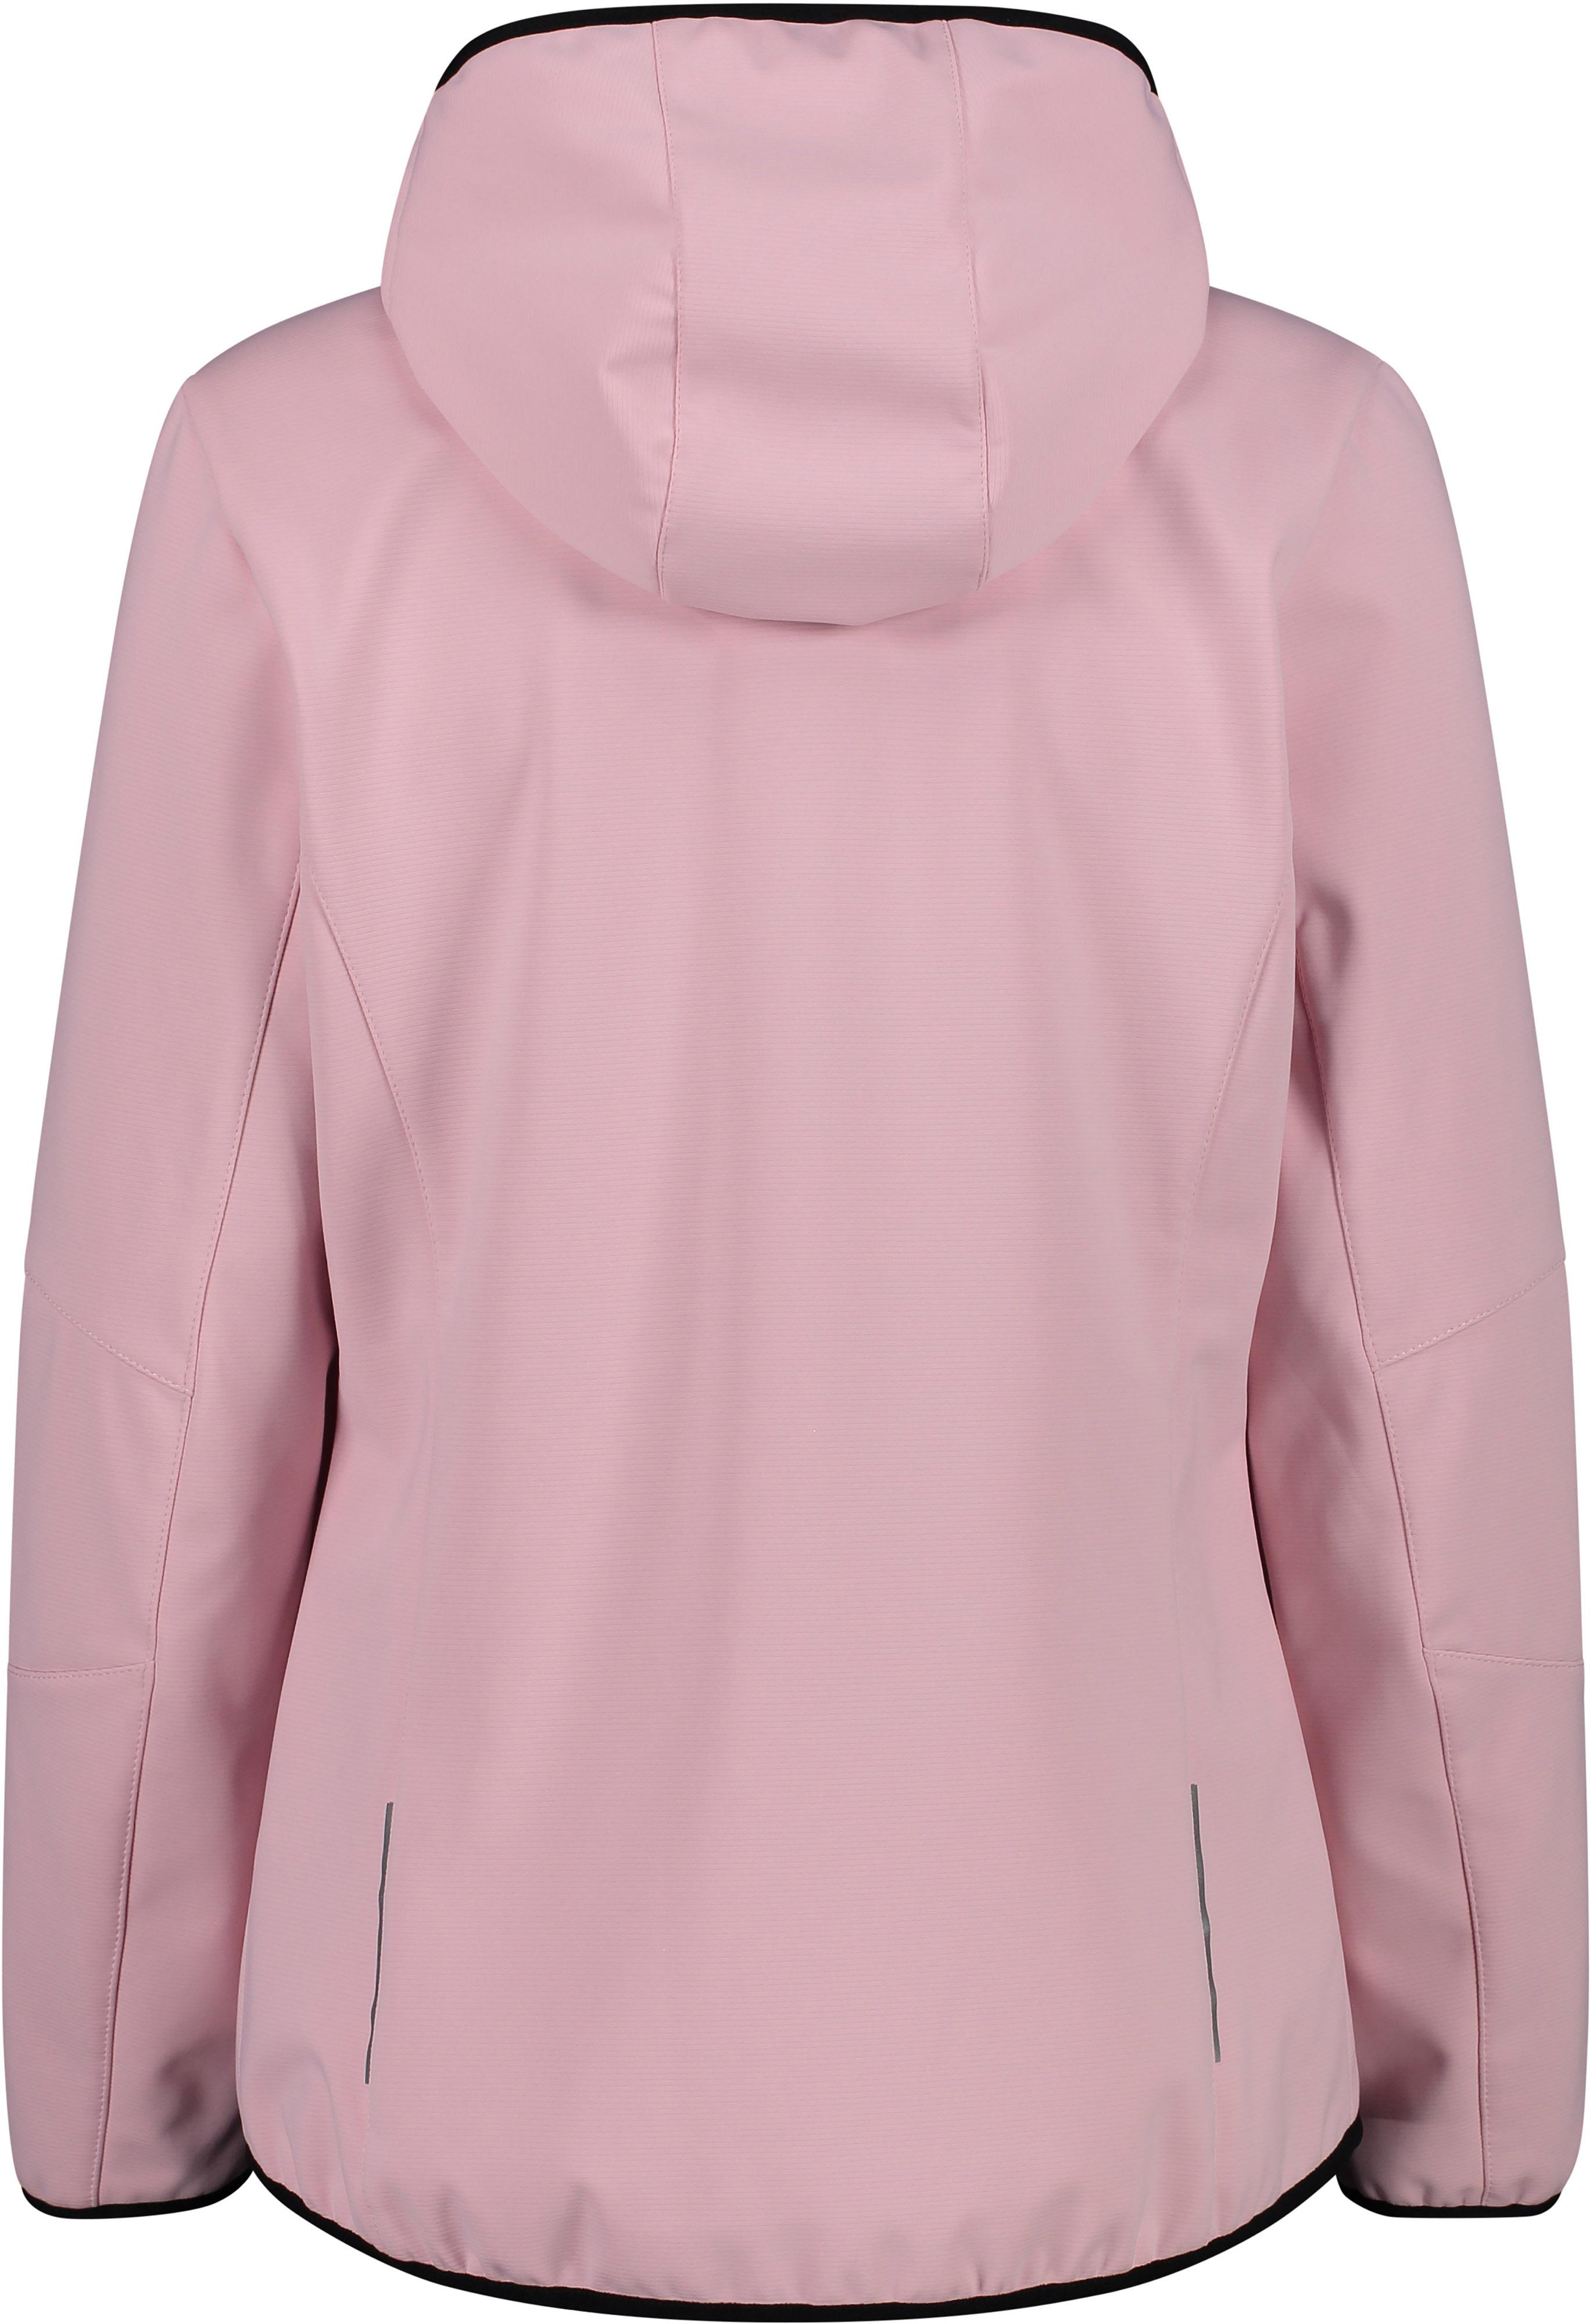 CMP WOMAN JACKET Damen Shop HOOD SportScheck ZIP Softshelljacke pink von im Online kaufen